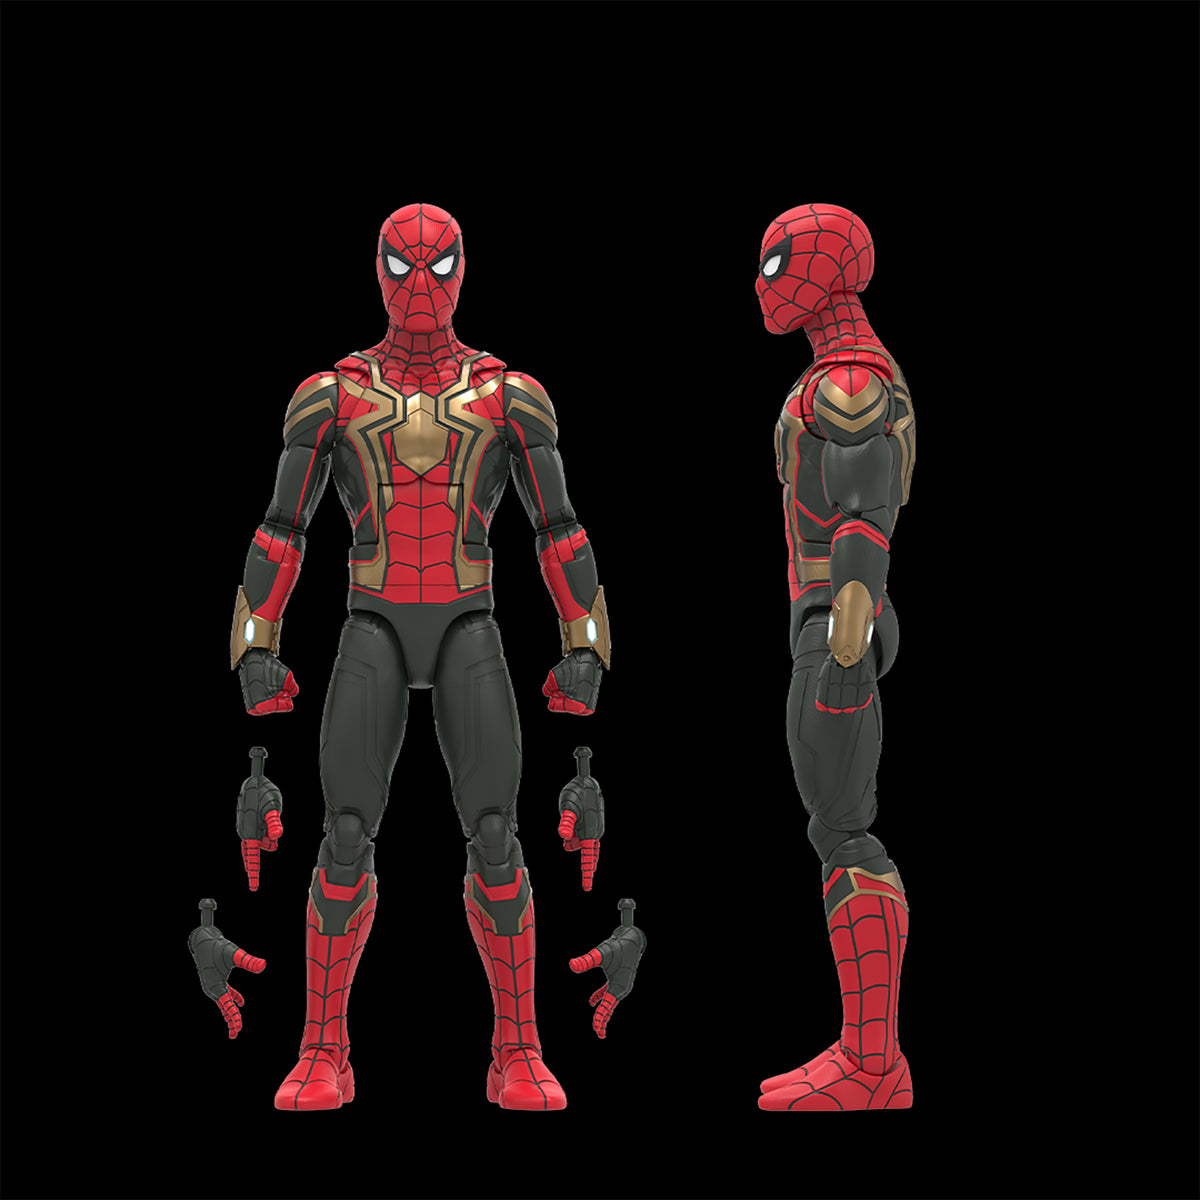 Exclusive Marvel Legends Spider-Man 5-Pack Up for Order! - Marvel  Toy News